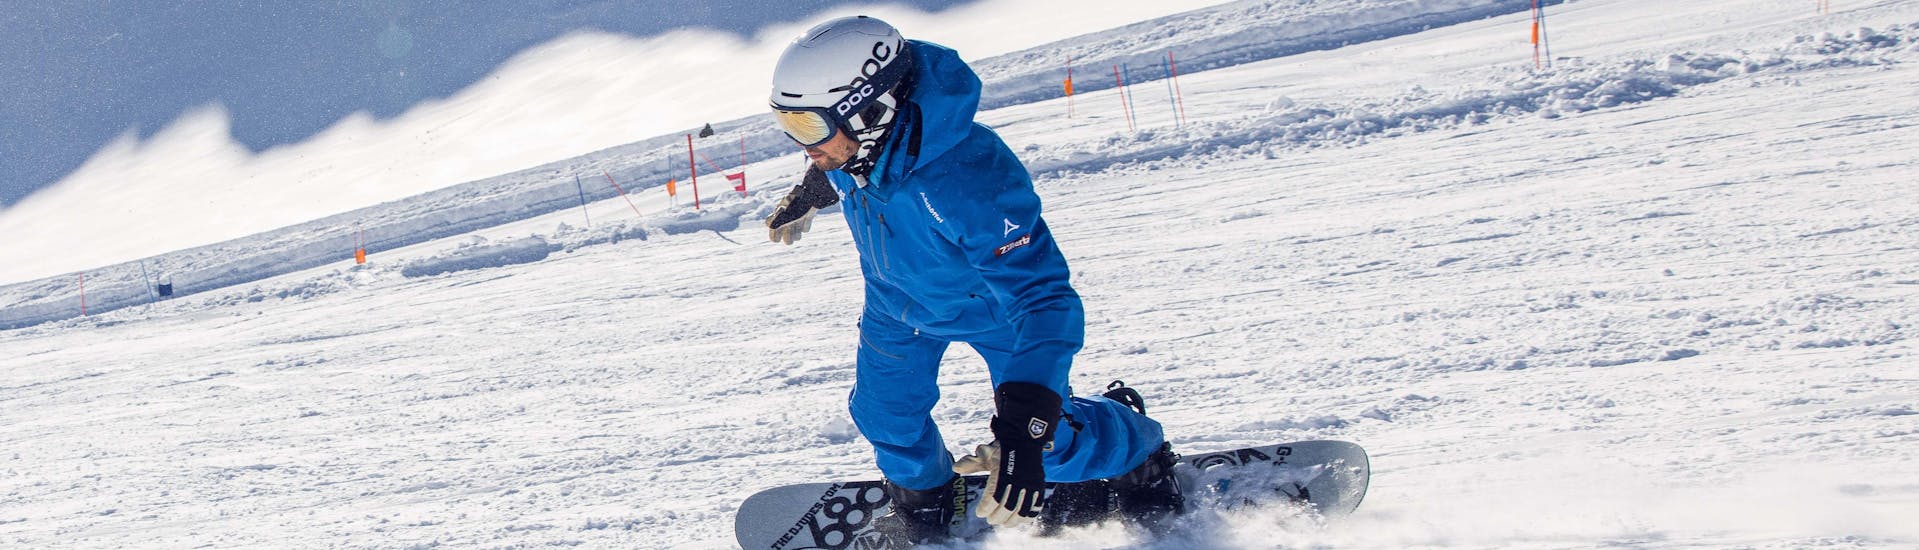 Lezioni private di Snowboard a partire da 5 anni per tutti i livelli con Ski School Skipower Finkenberg.